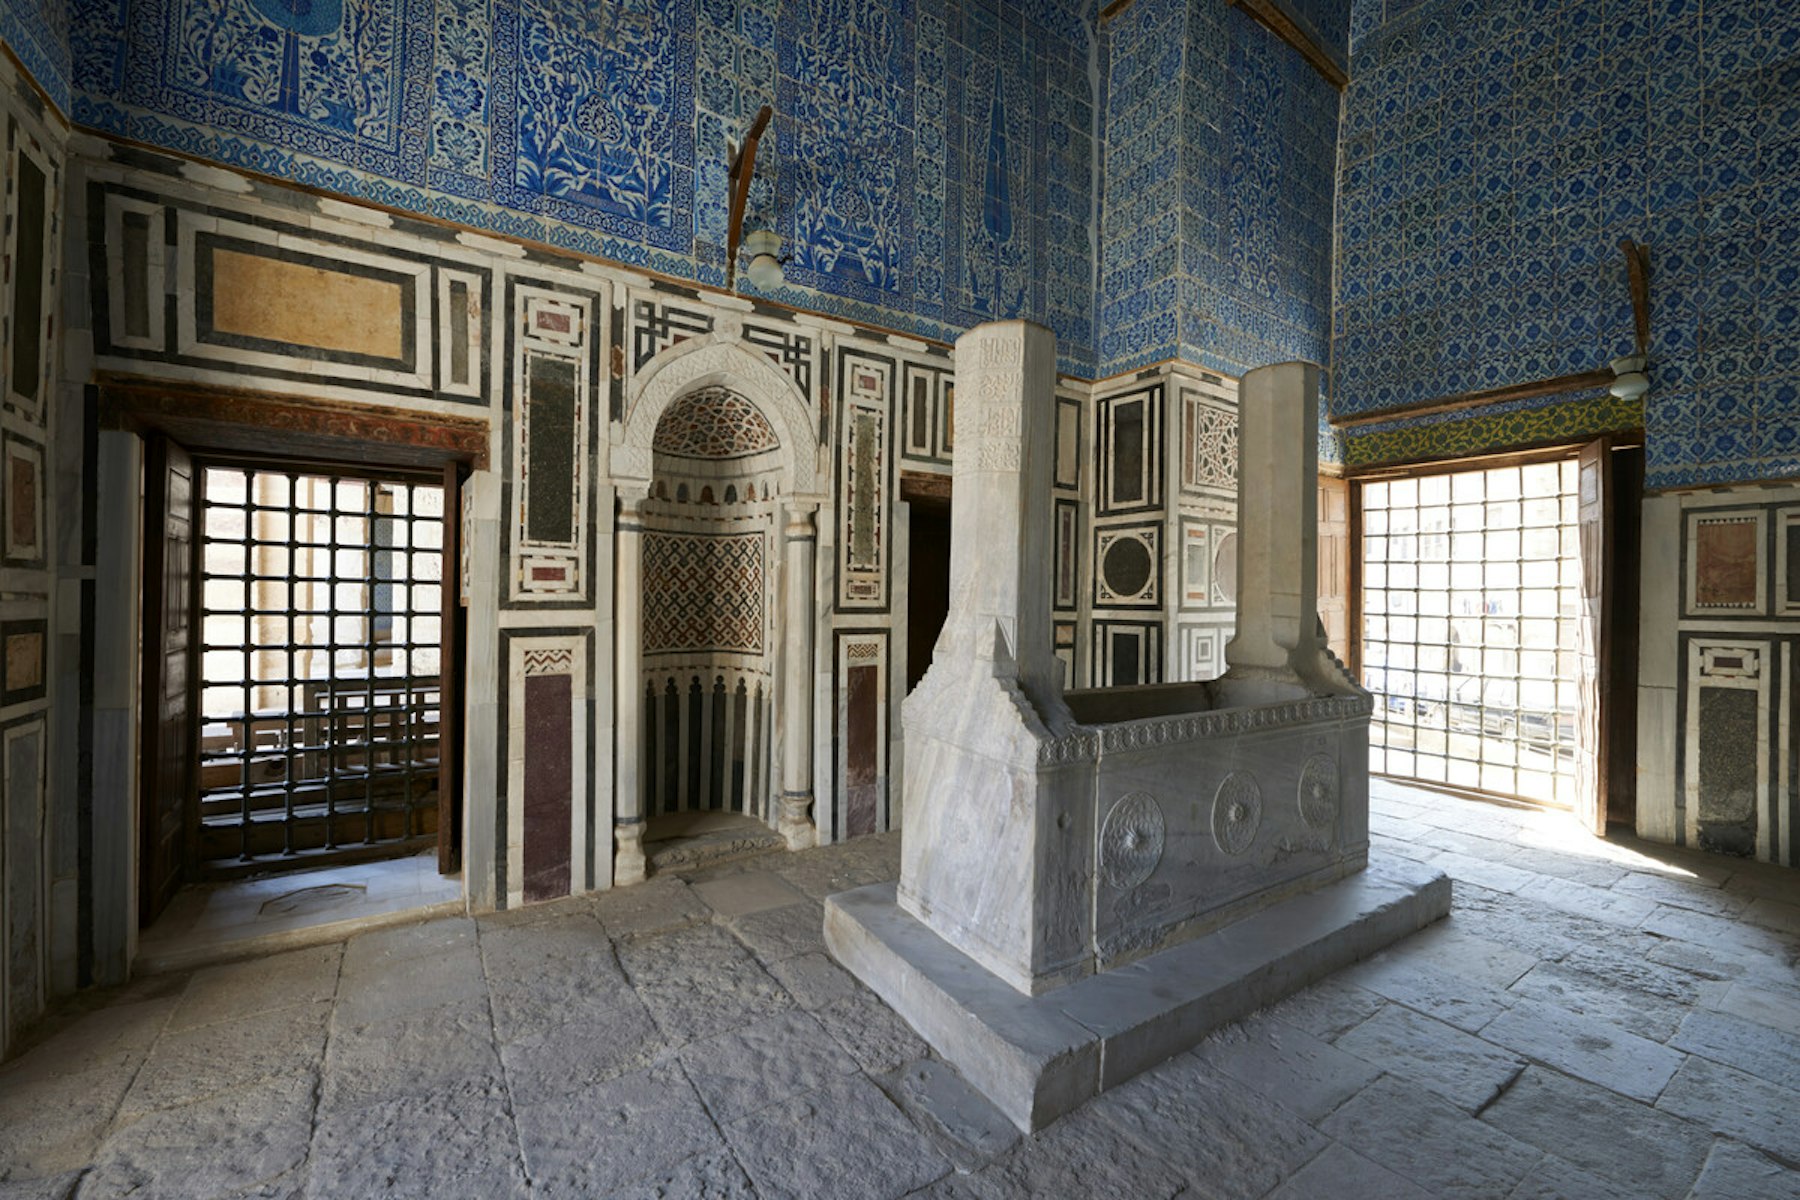 Aqsunqur Mosque (Blue Mosque)